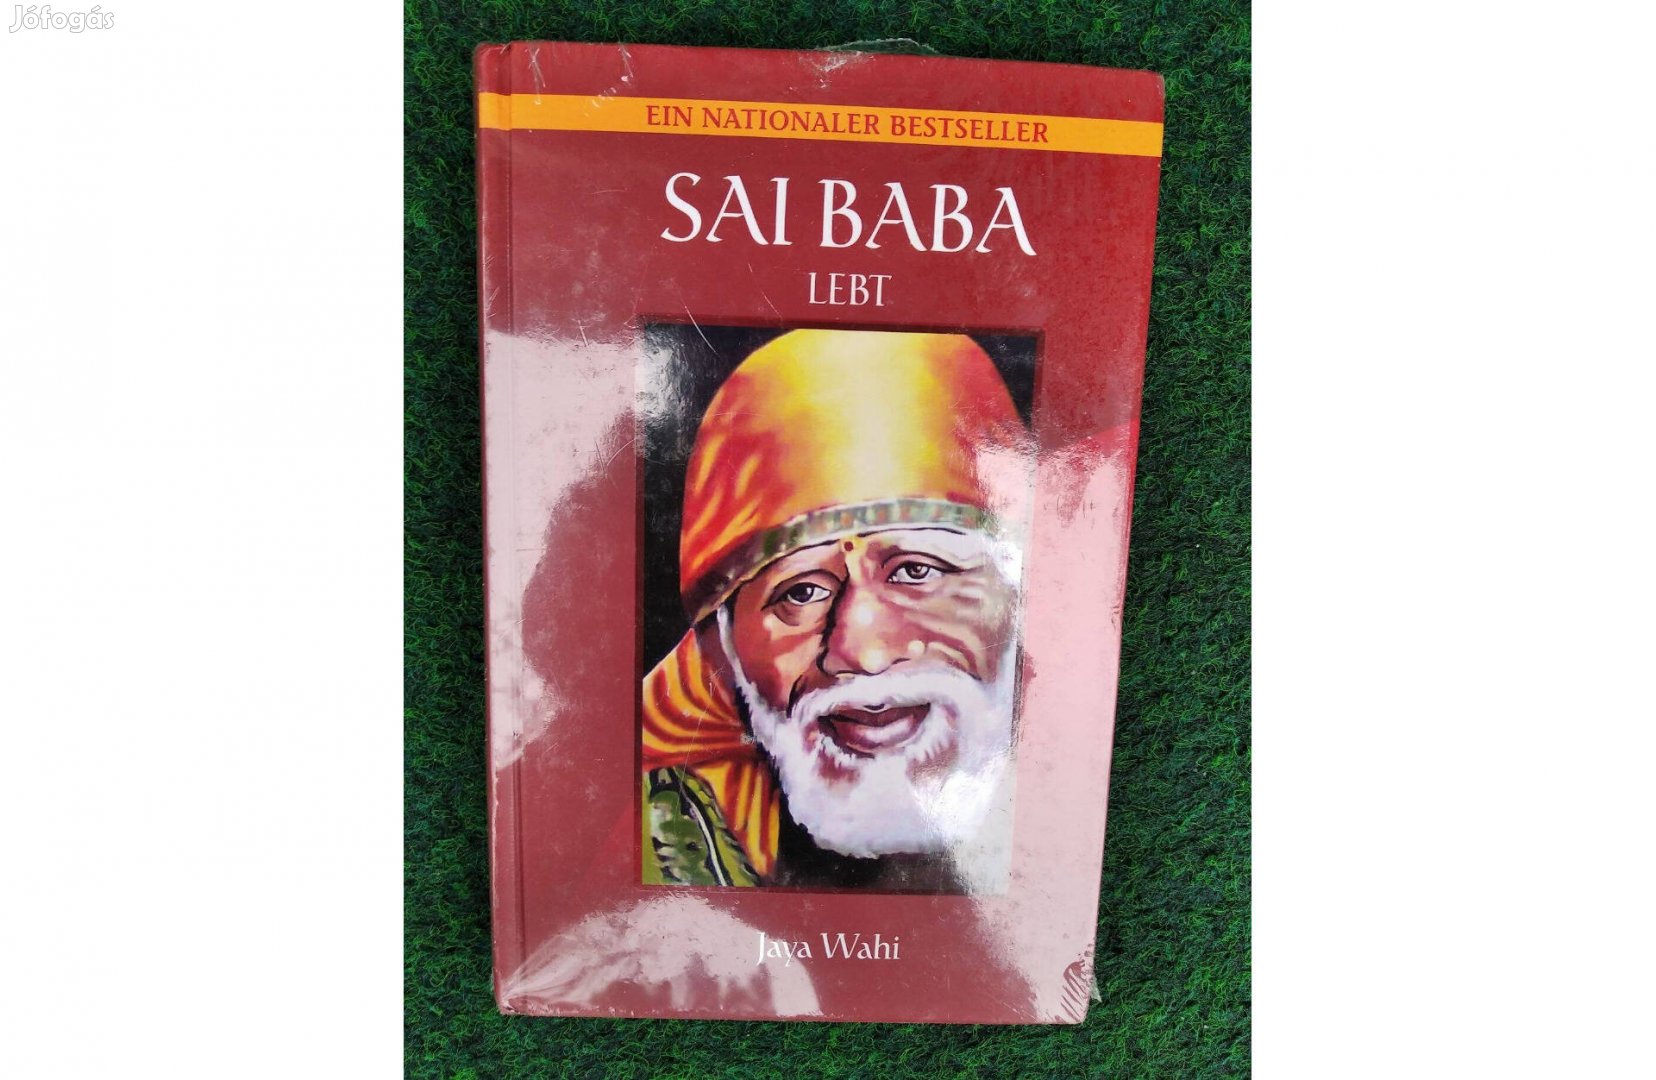 Jaya Wahi: Sai Baba lebt című könyve németül